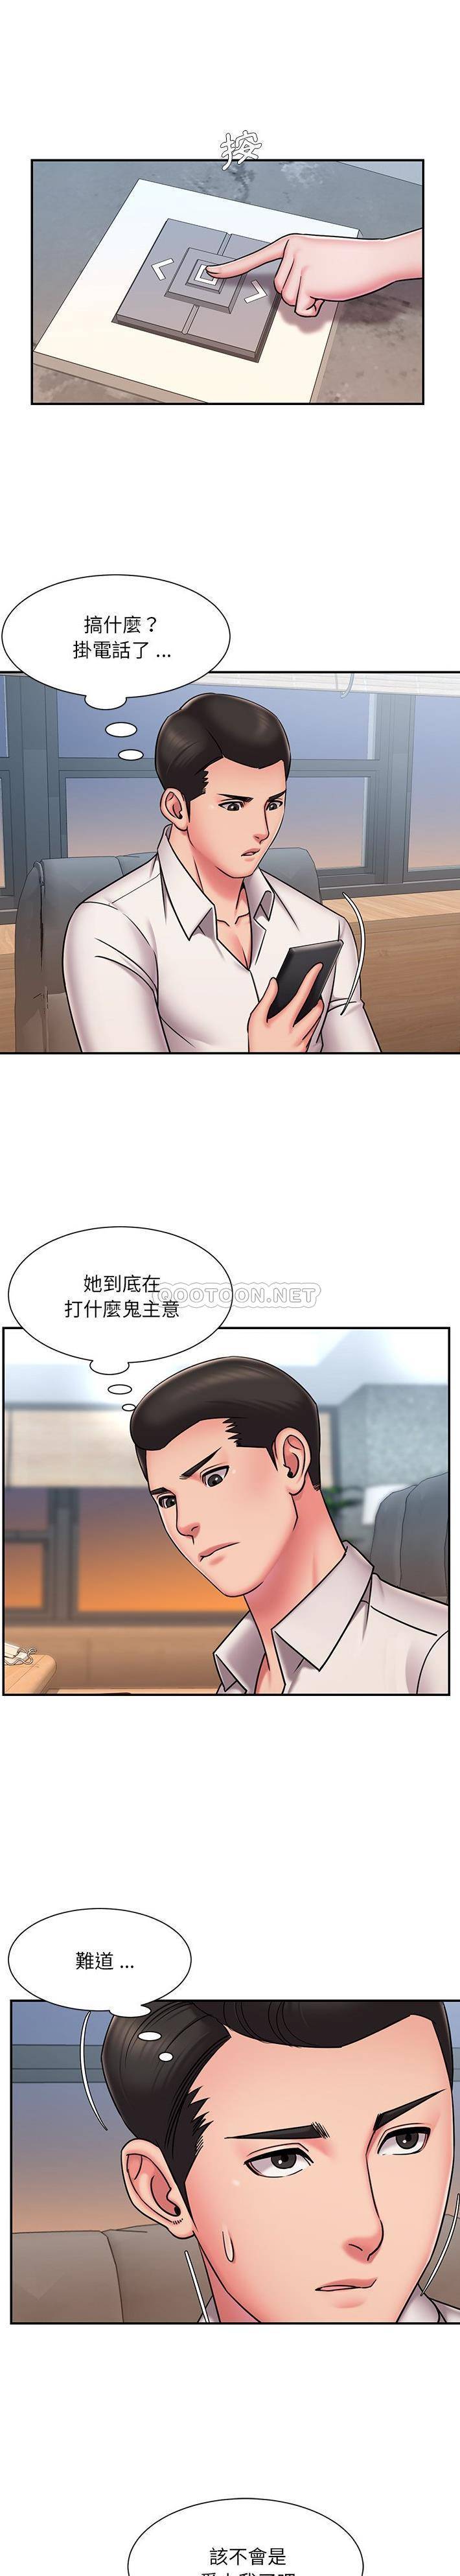 韩国污漫画 被拋棄的男人(男孩沒人愛) 第49话 10